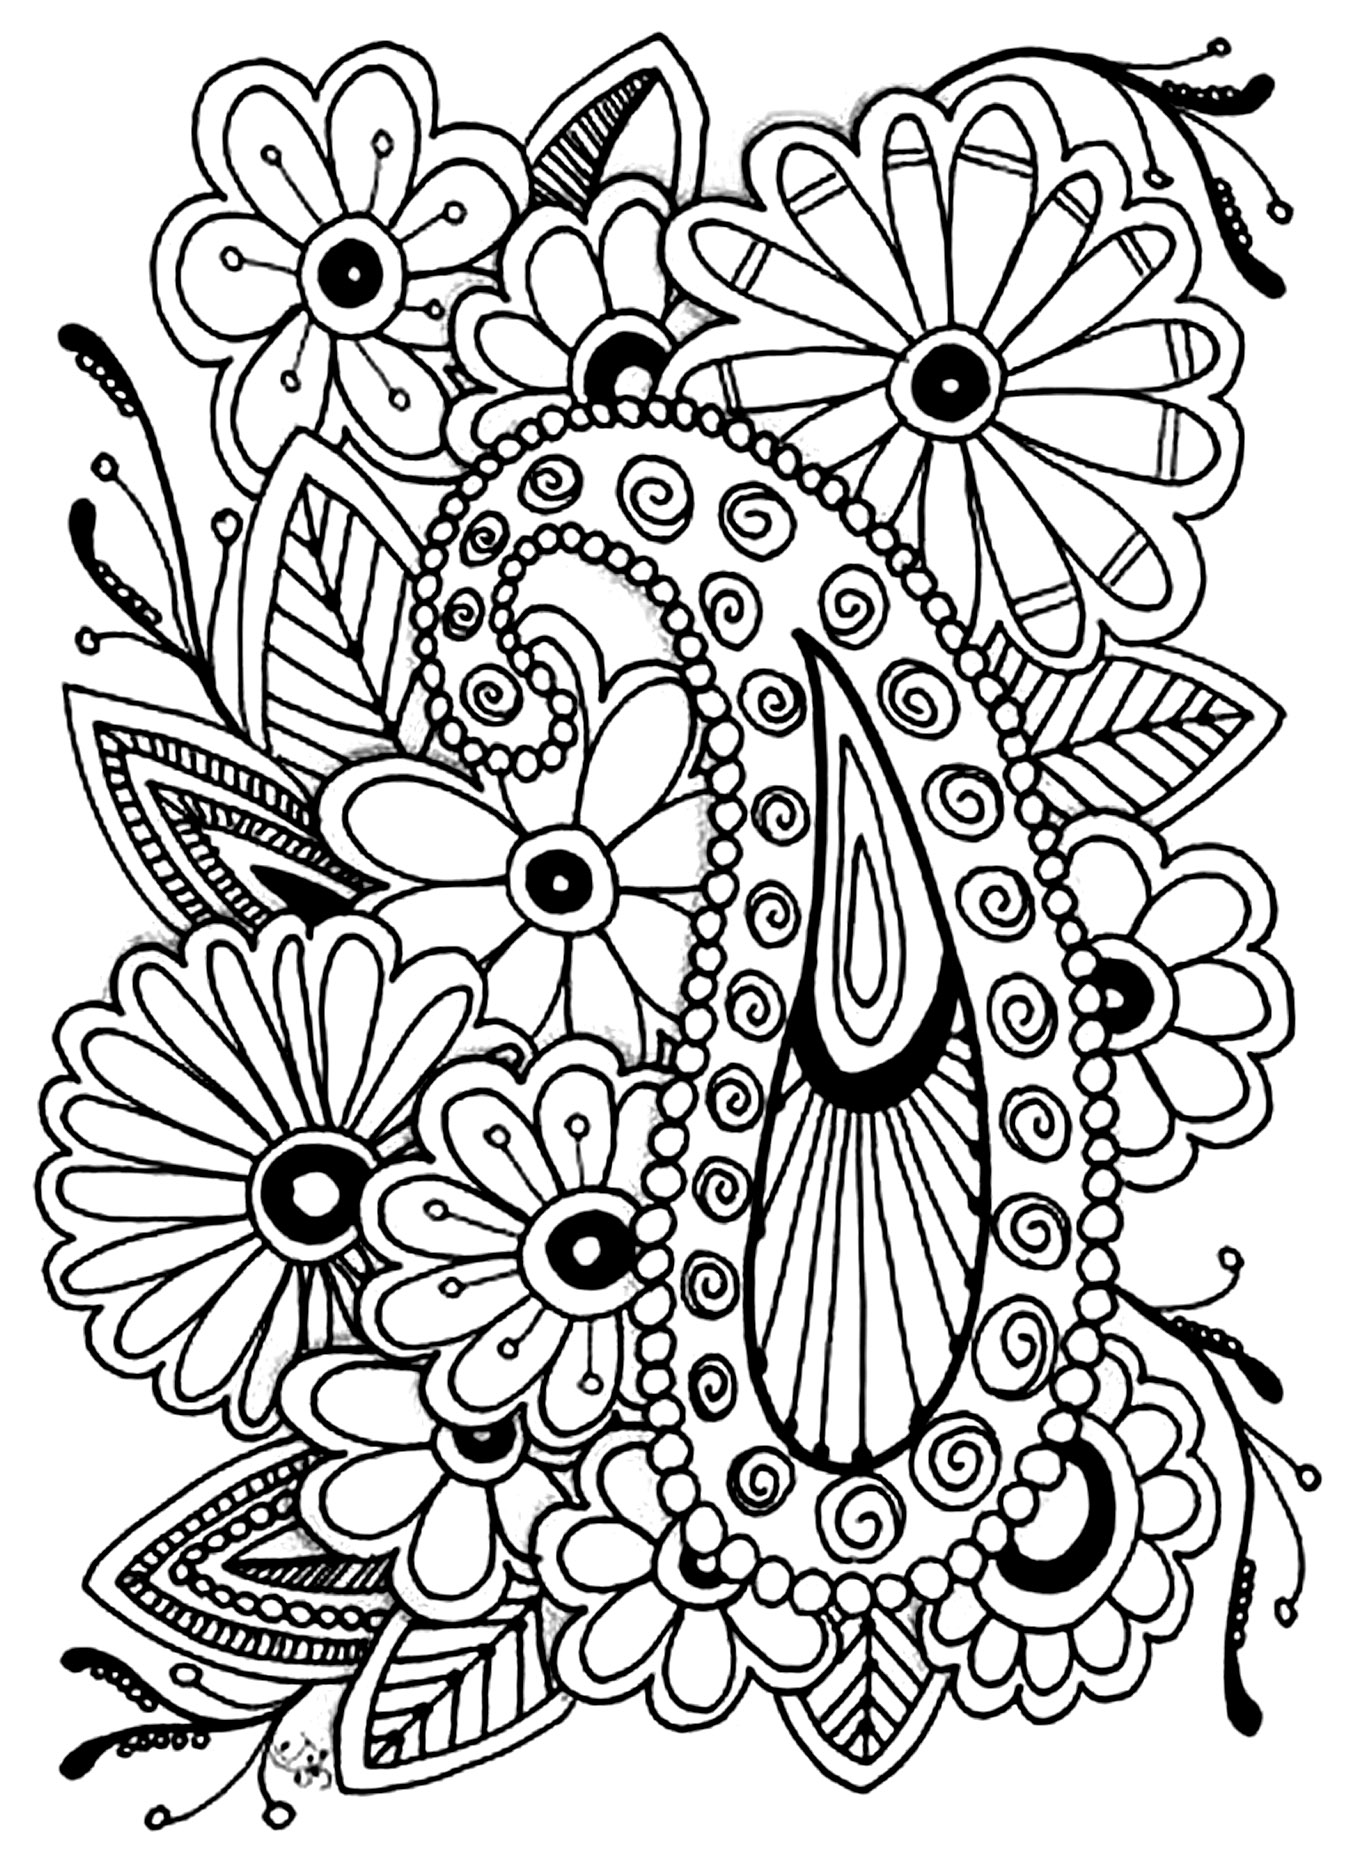 Disegni da colorare per adulti : Fiori e vegetazione - 24, Artista : Jennifer Stay